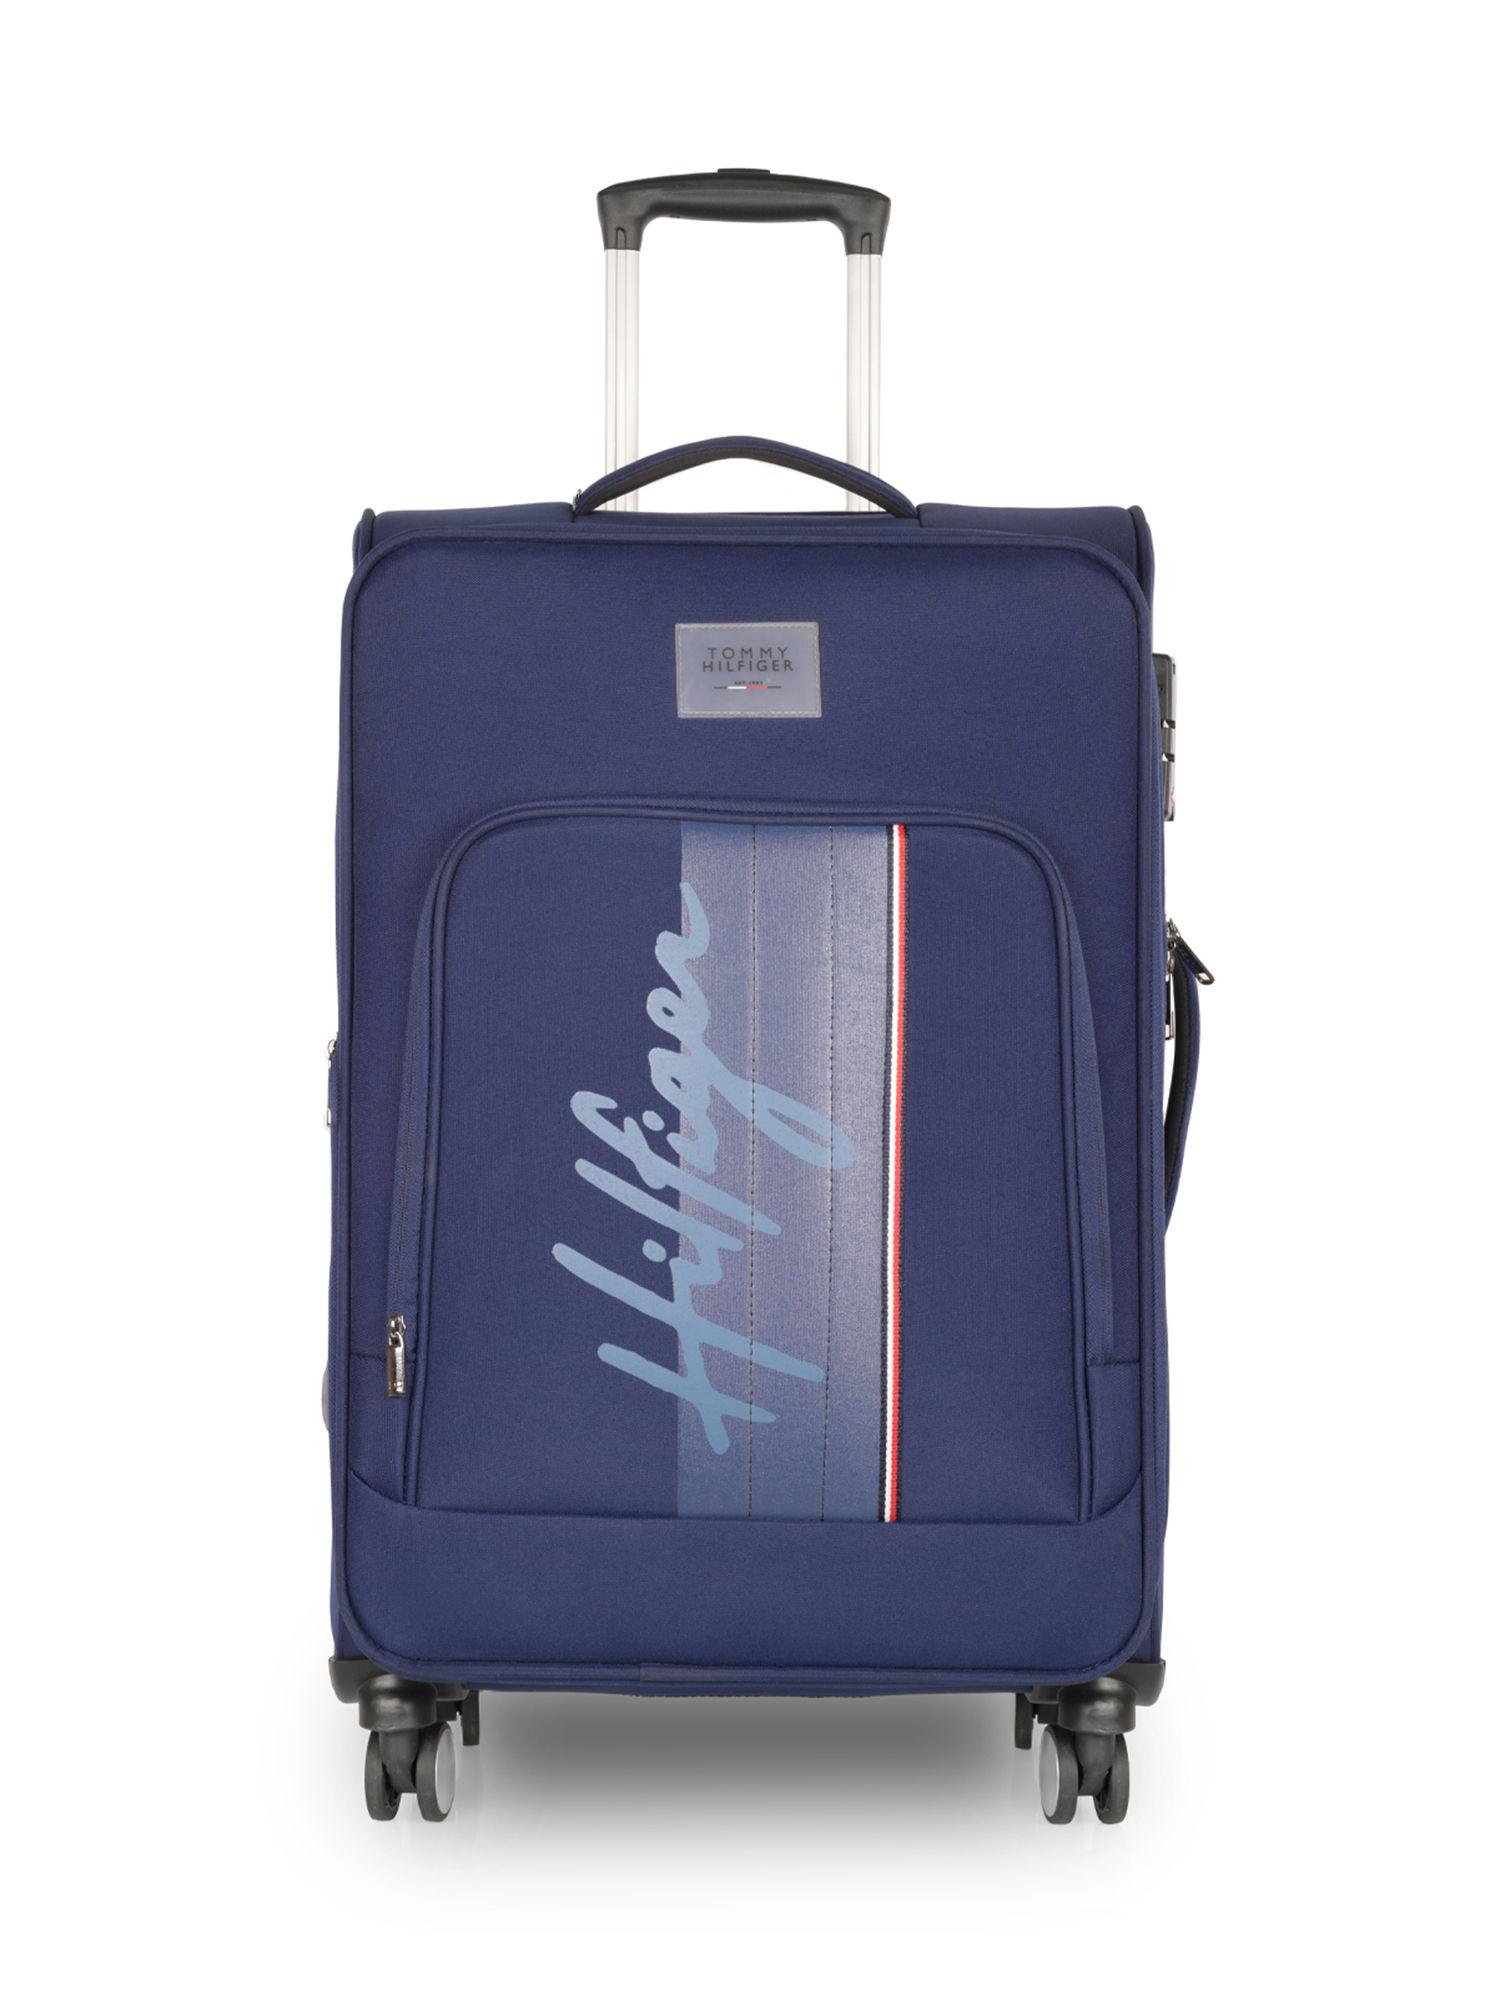 richmond soft luggage trolley bag printed navy blue